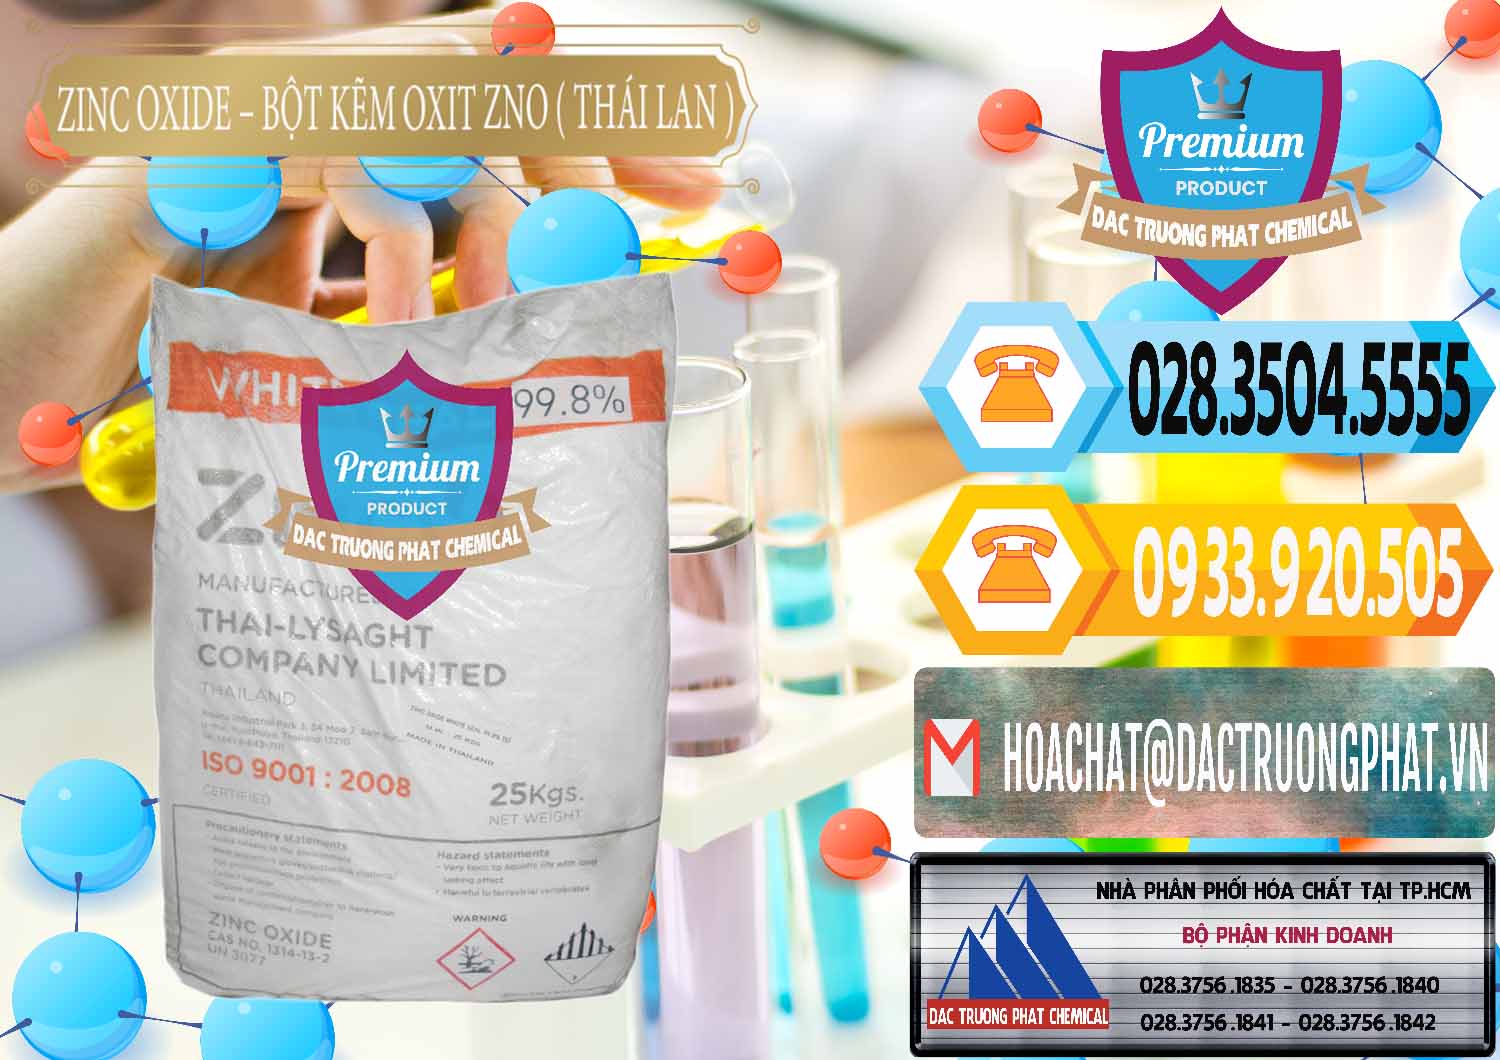 Cty bán và cung cấp Zinc Oxide - Bột Kẽm Oxit ZNO Thái Lan Thailand - 0181 - Công ty chuyên cung cấp ( kinh doanh ) hóa chất tại TP.HCM - hoachattayrua.net